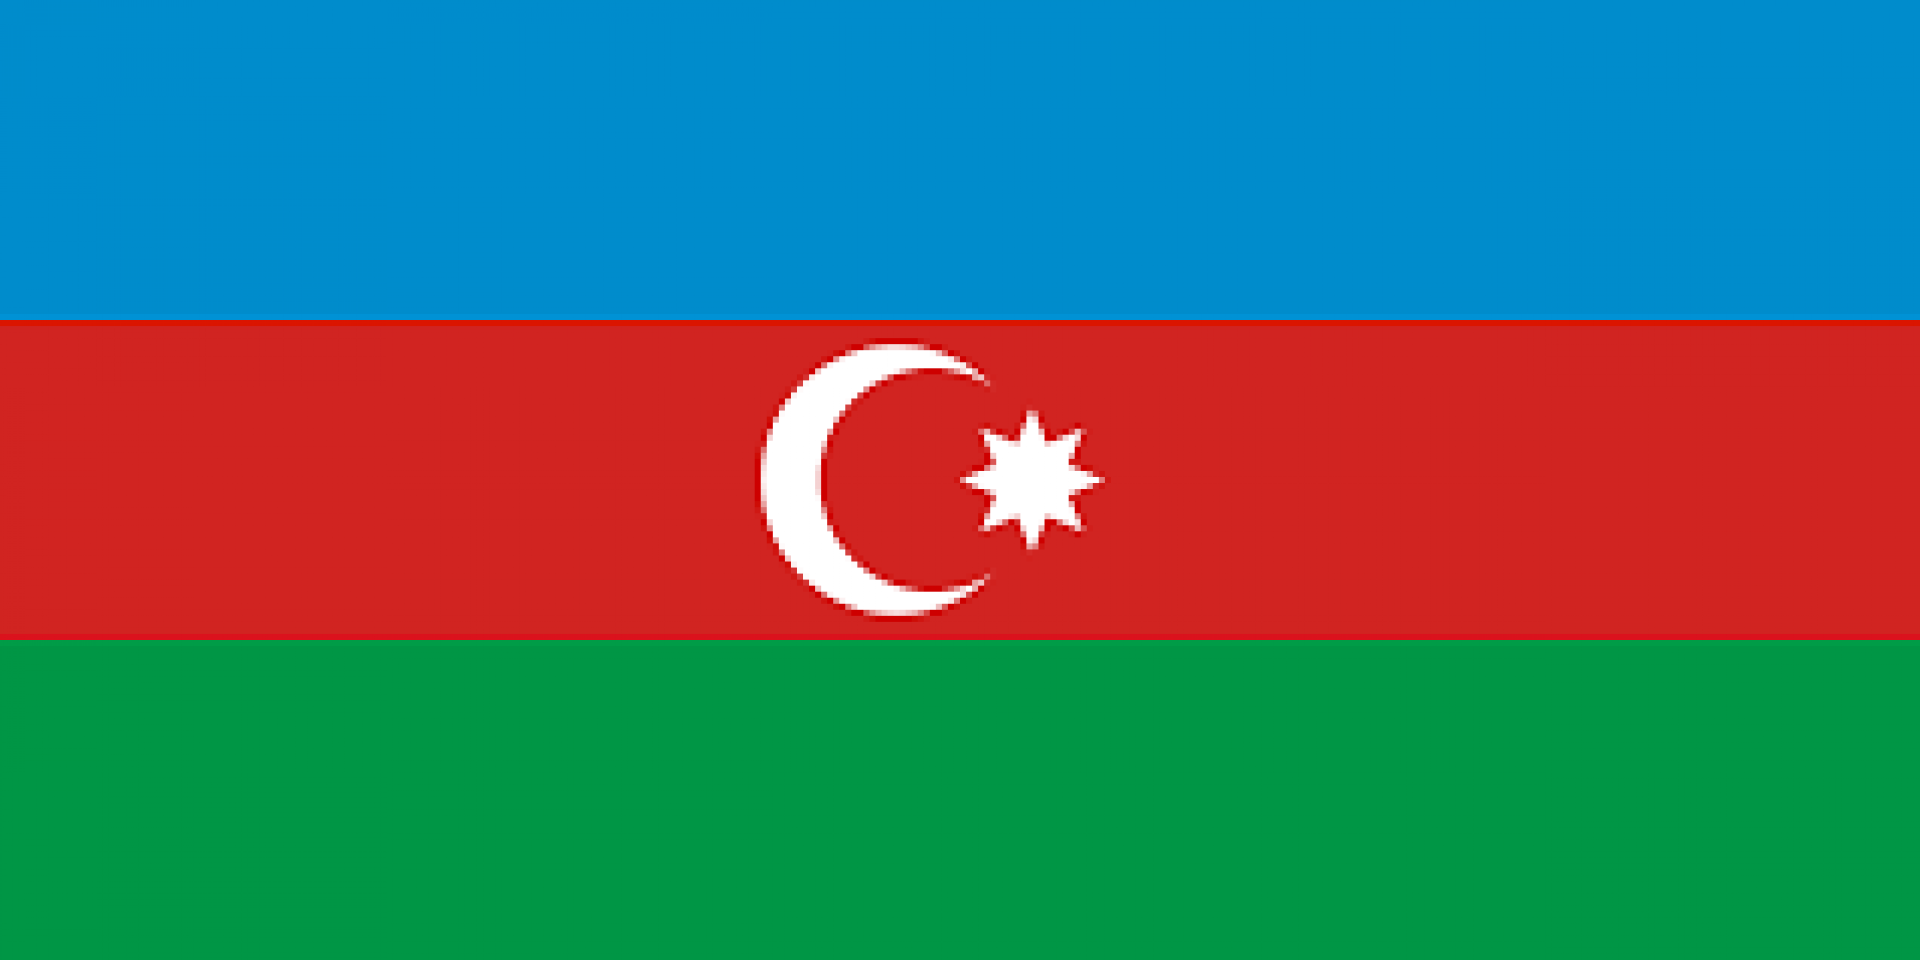 عاجل وهام -اهل مقاطعة نخچوان الواقعة في مثلث ارمينيا - اذربايجان - ايران ، يطالبون بعودتهم لبلادهم الاصلية